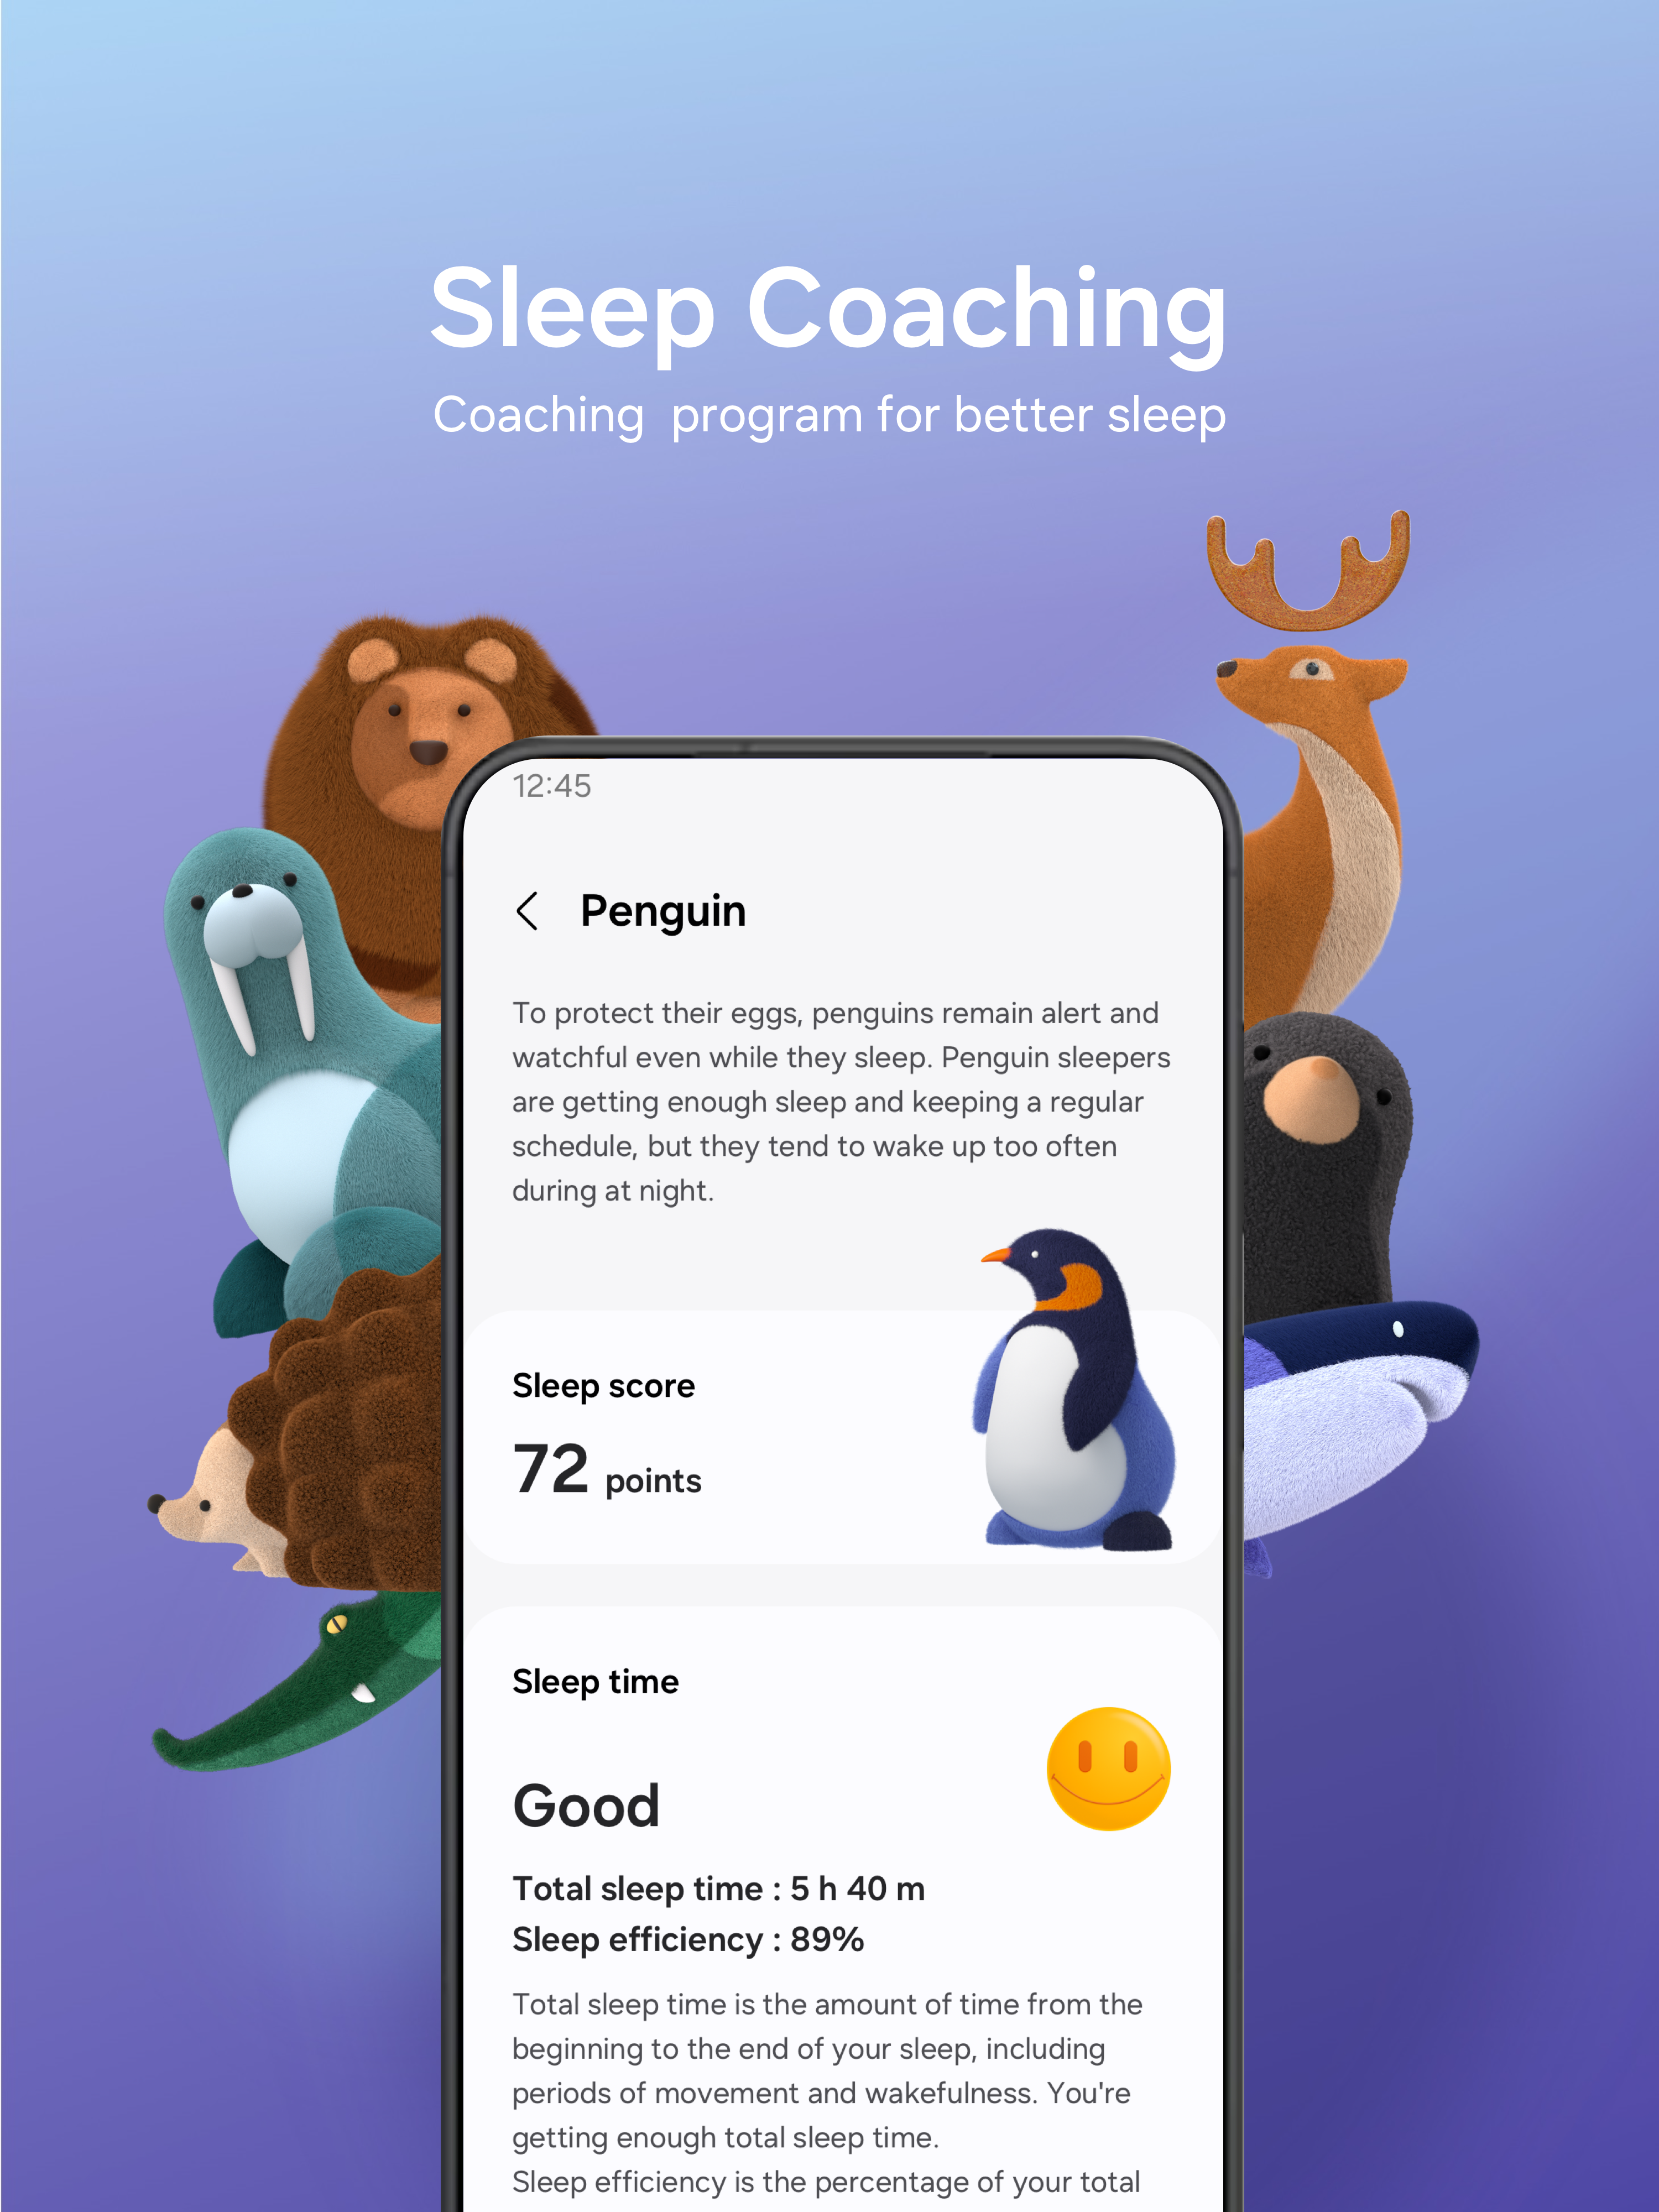 Coaching program for better sleep